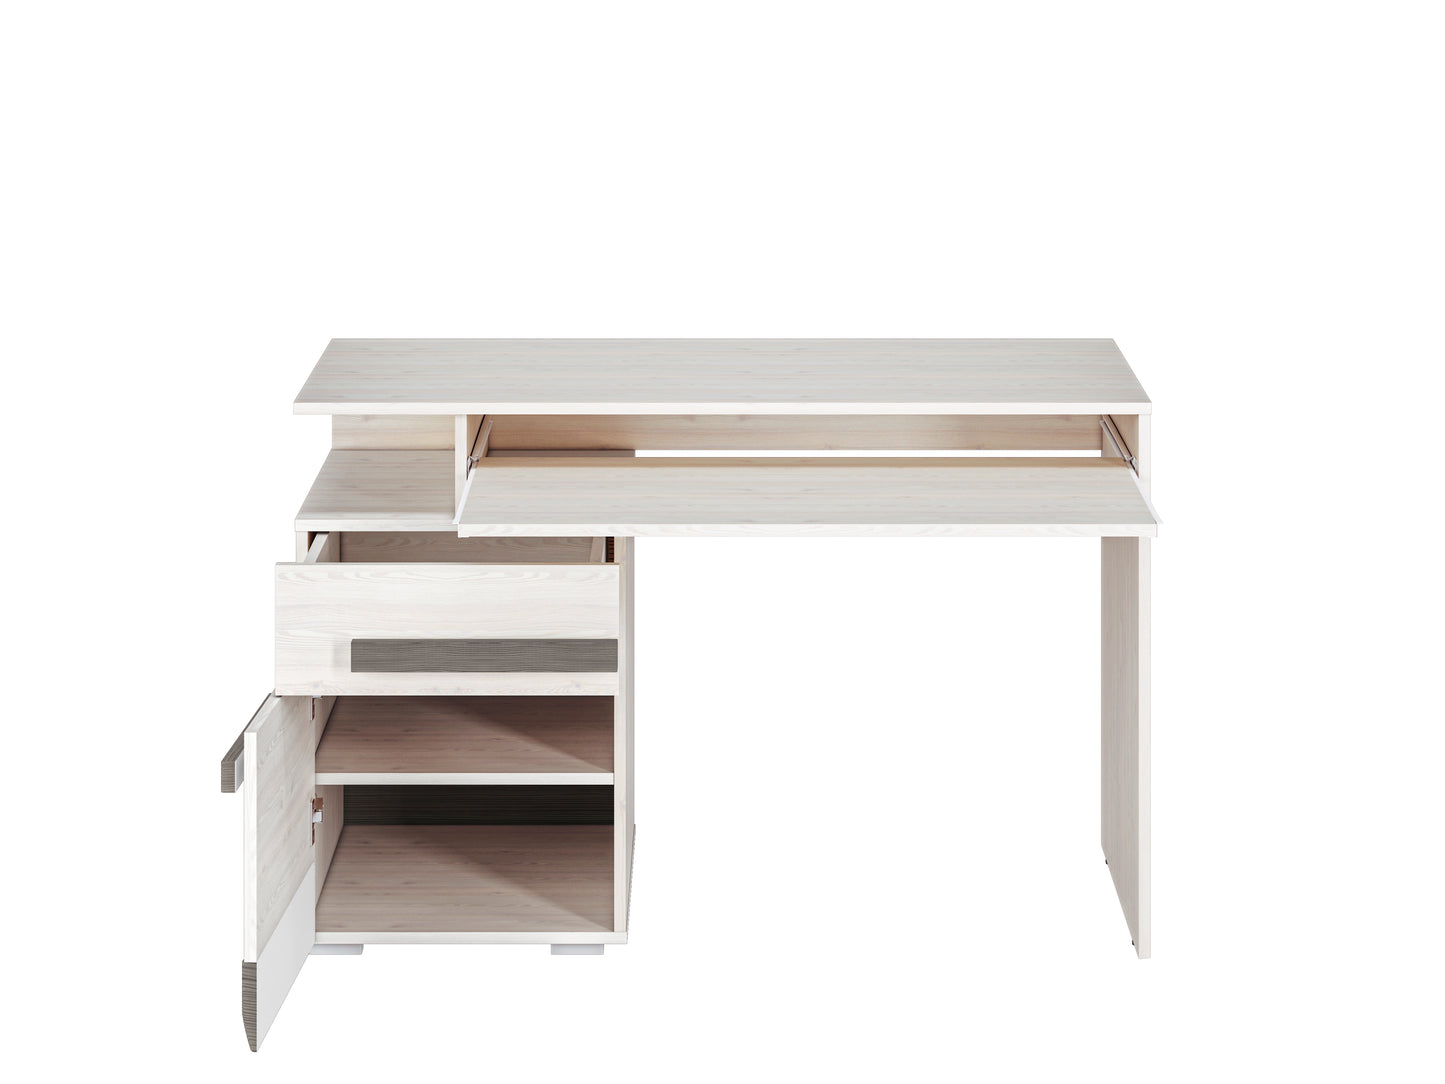 Zdjęcie przedstawiające nowoczesne biurko do salonu Blanka z tacką na klawiaturę oraz szufladą i szafką z półką.